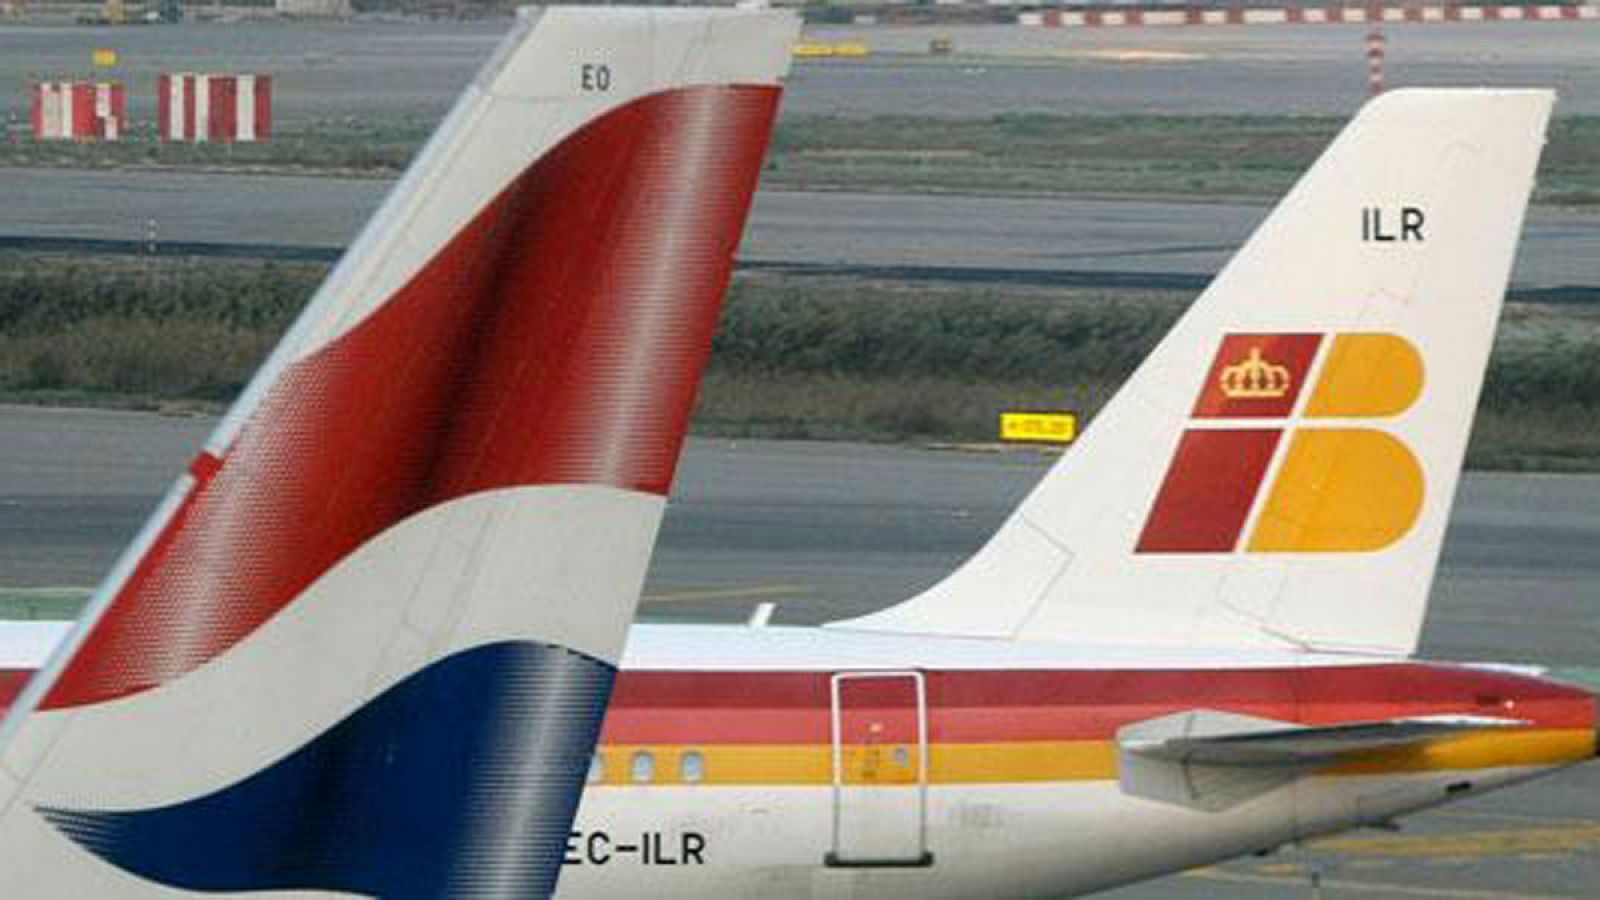 Colas de dos aviones de British Airways e Iberia, aerolíneas integradas en IAG